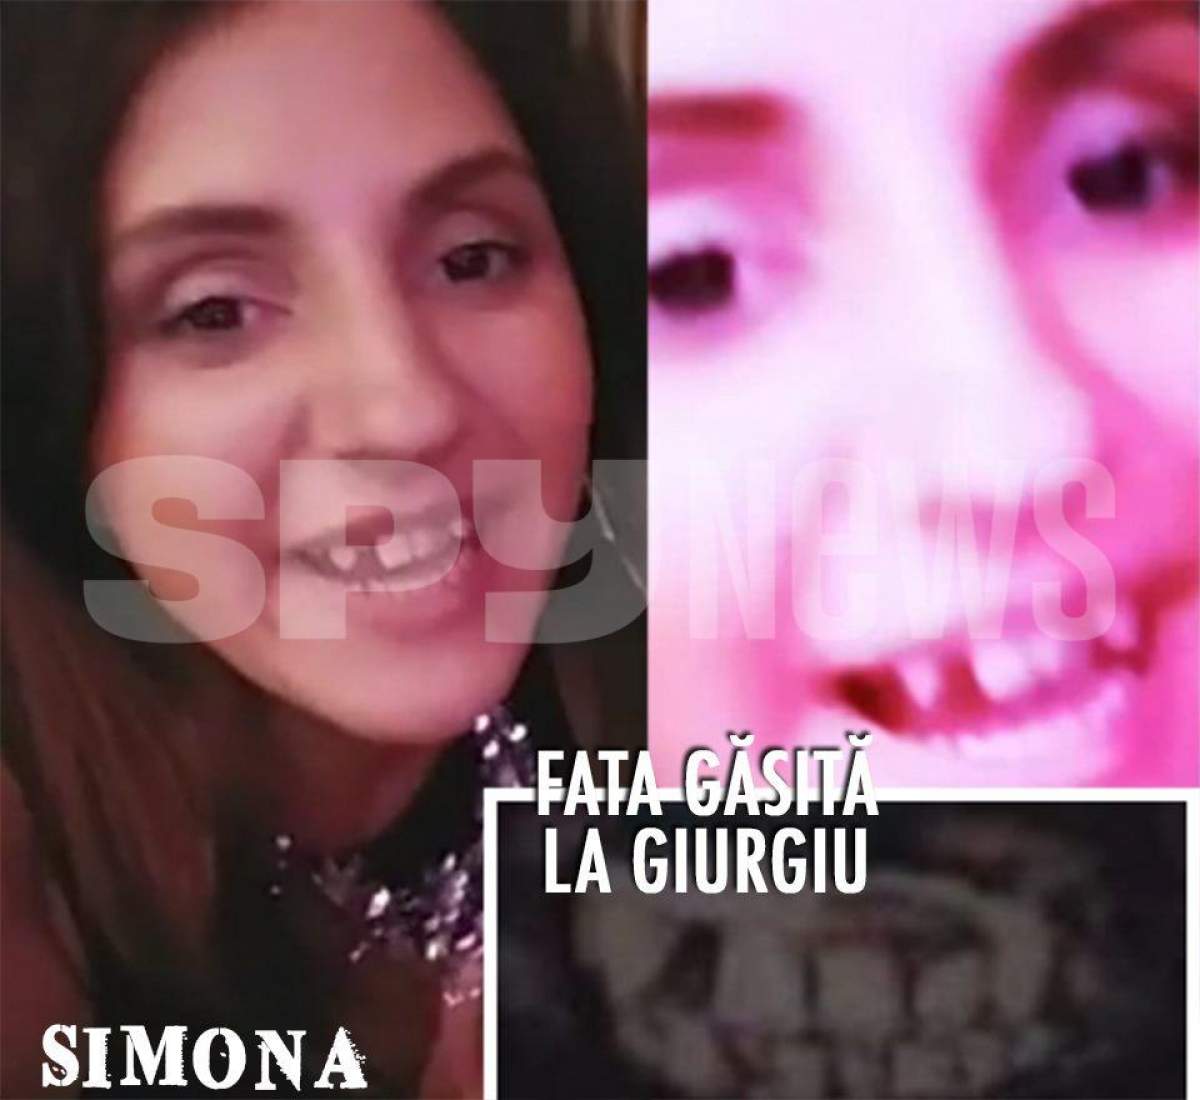 Imagini incredibile în cazul crimei din Giurgiu! Dantura Simonei, fata dispărută și găsită în București, e identică cu cea a cadavrului carbonizat!